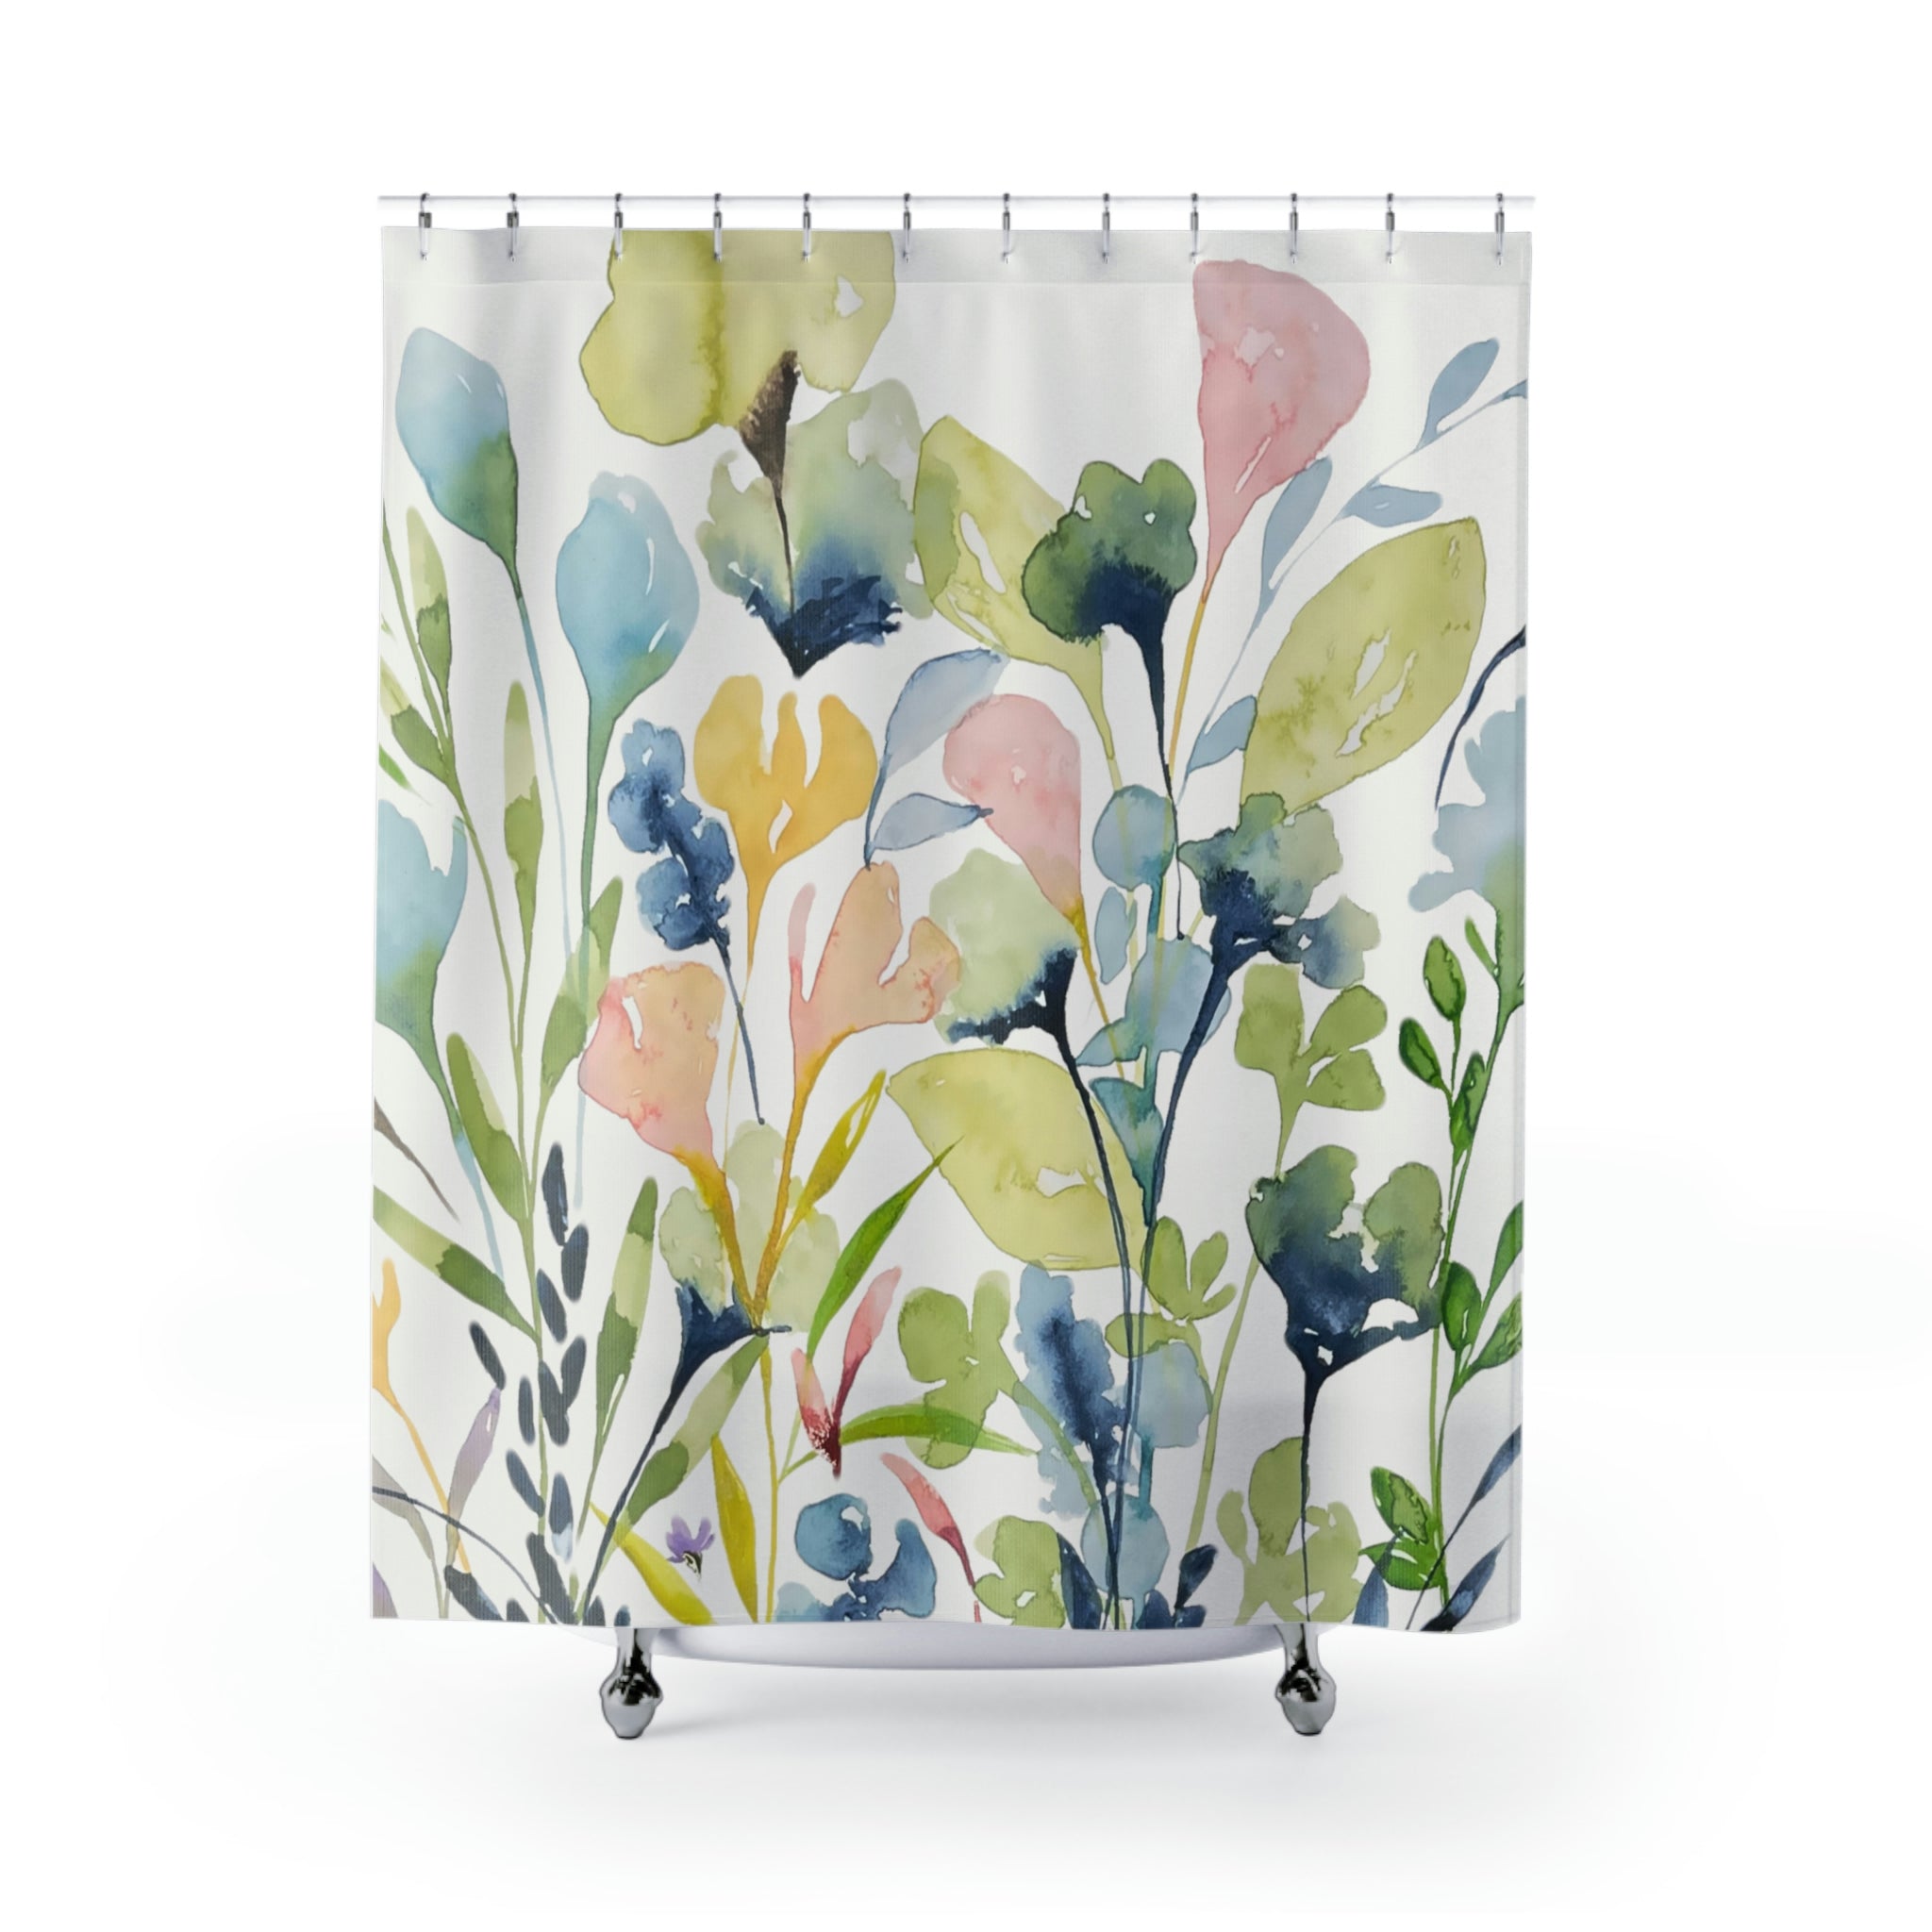 Prairie Wildflowers #2 Botanical Garden Print on Shower Curtain